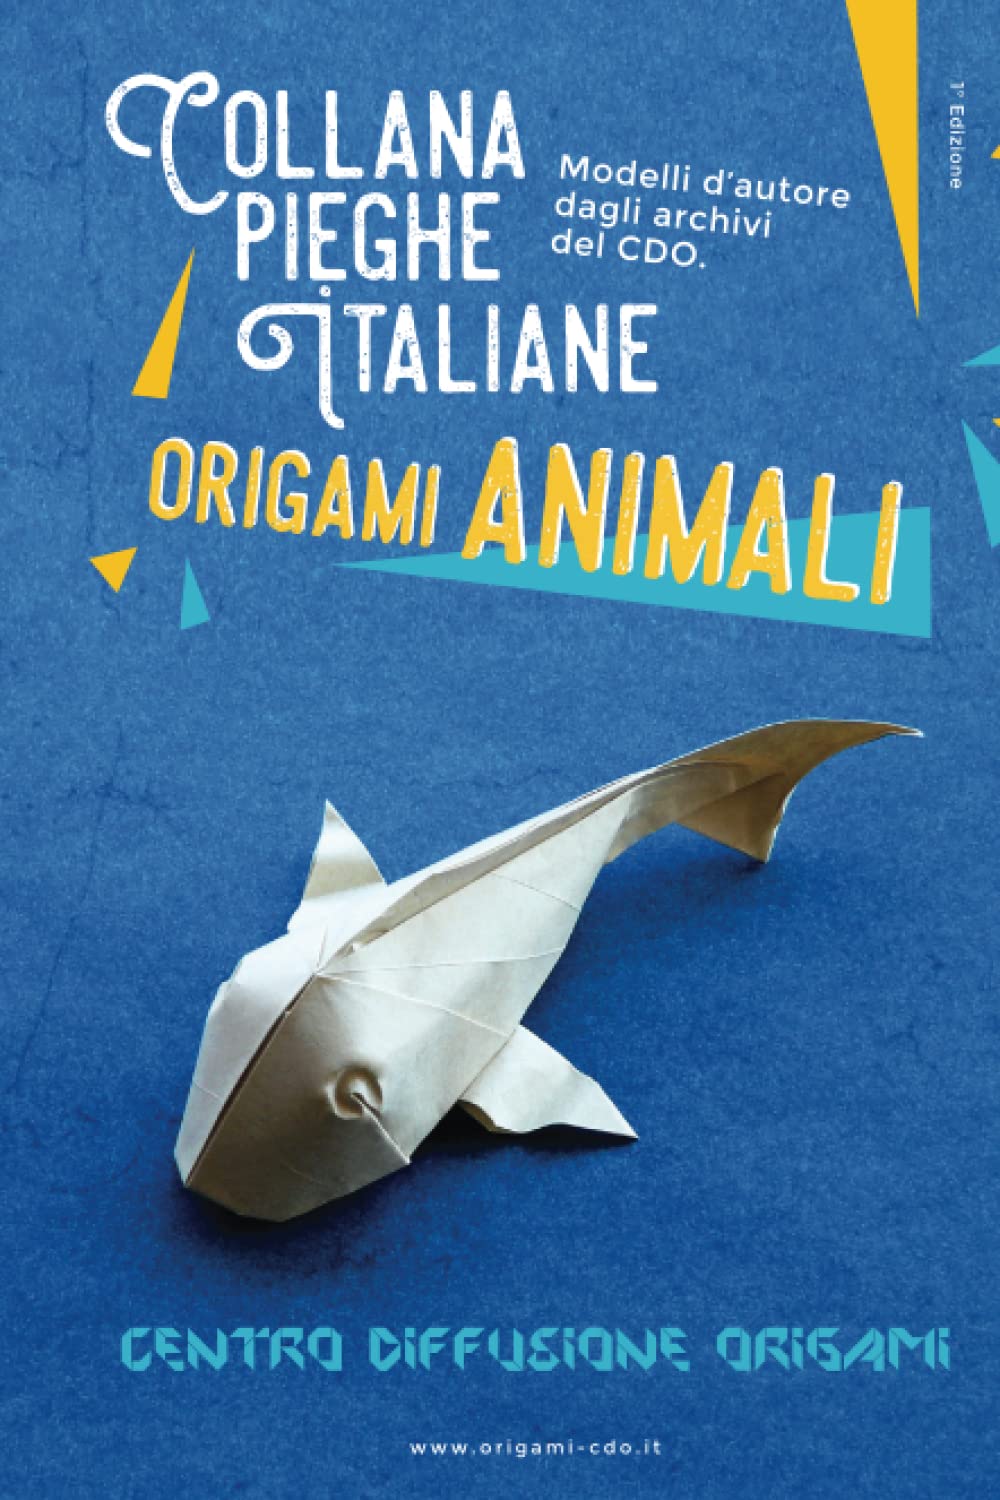 Collana pieghe Italiane - origami ANIMALI : page 96.